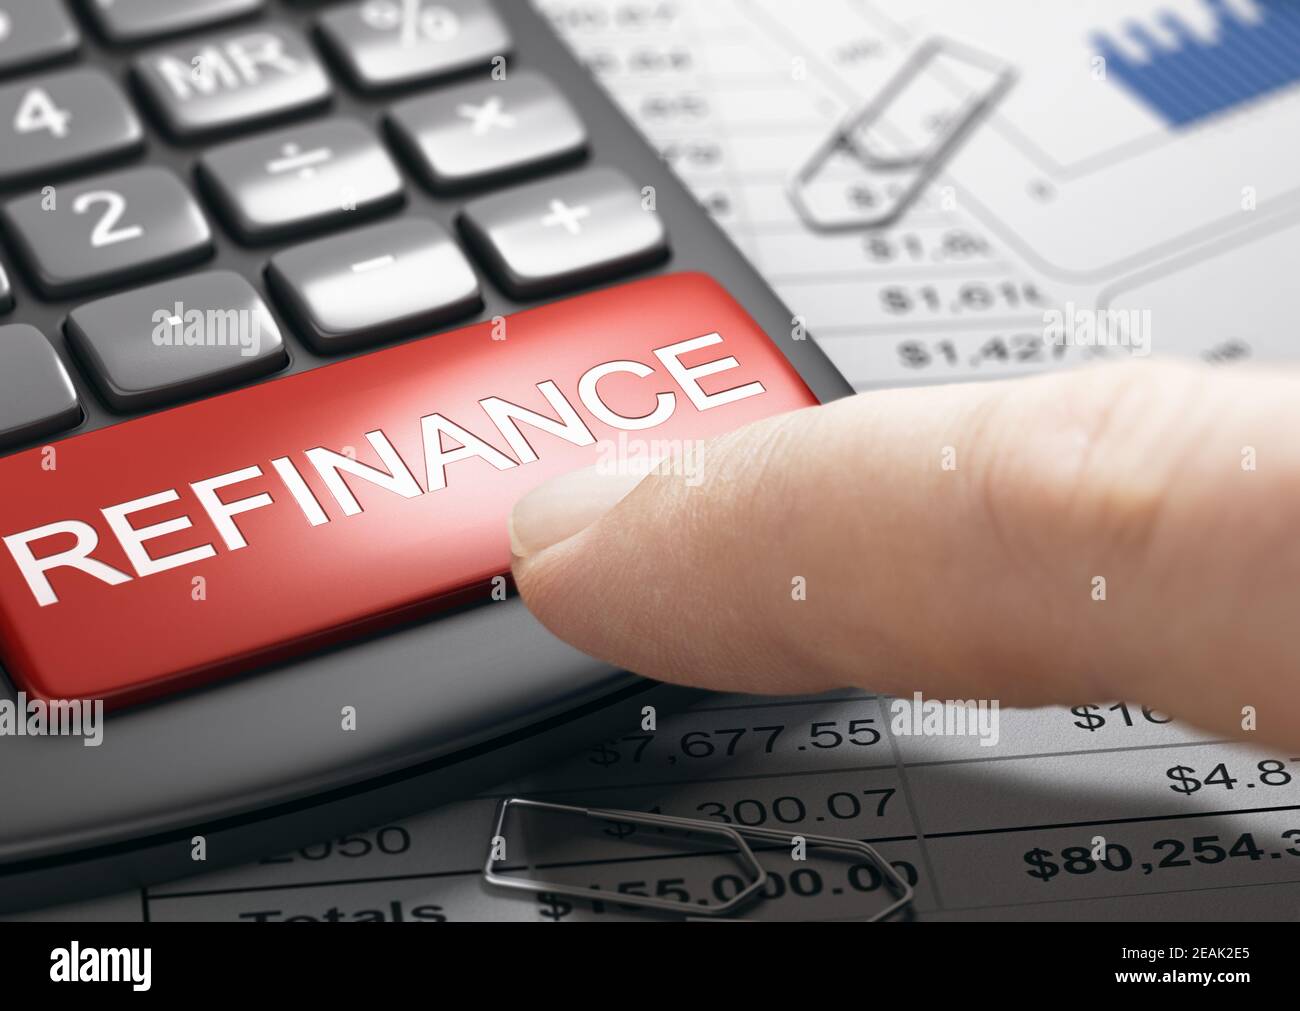 Refinancing debt, loan or mortgage. Bad credit repair. Stock Photo